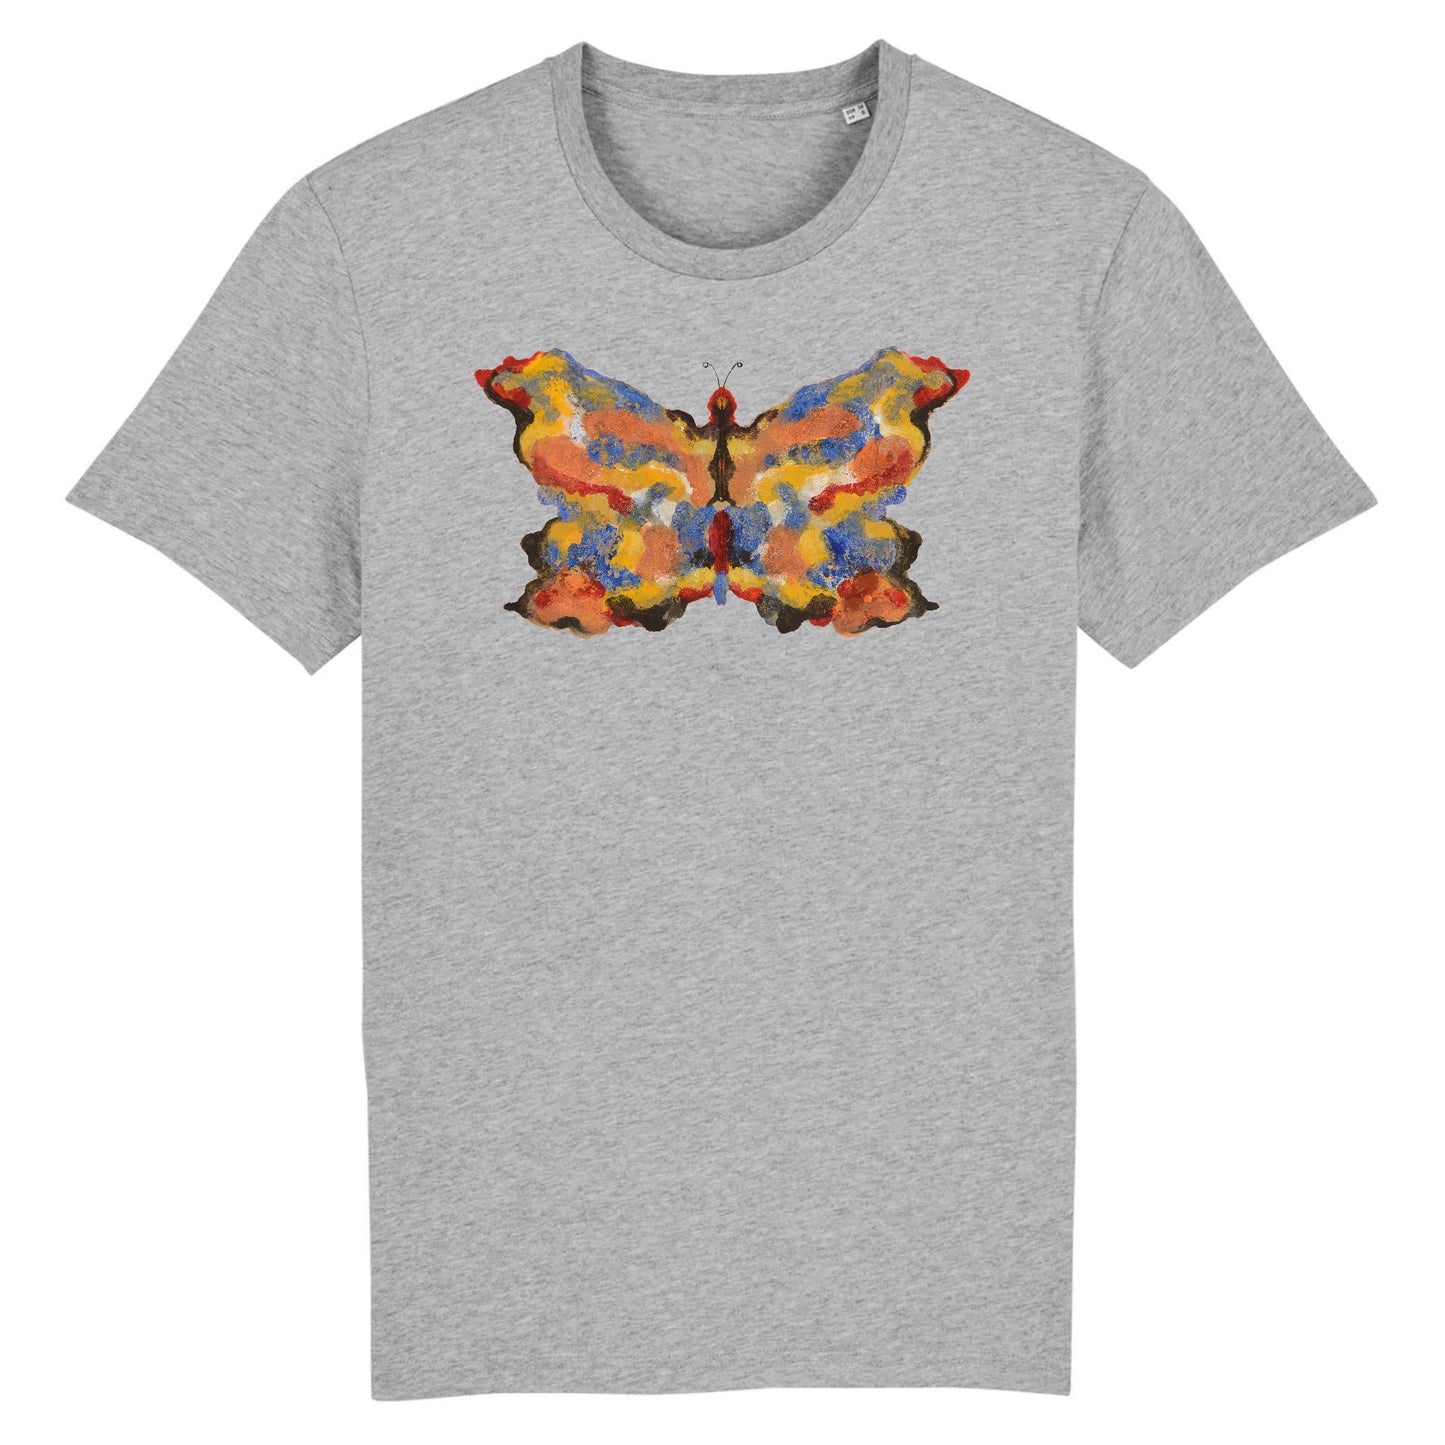 Butterfly 8 by Albert Bierstadt, 1890 - Organic Cotton T-Shirt